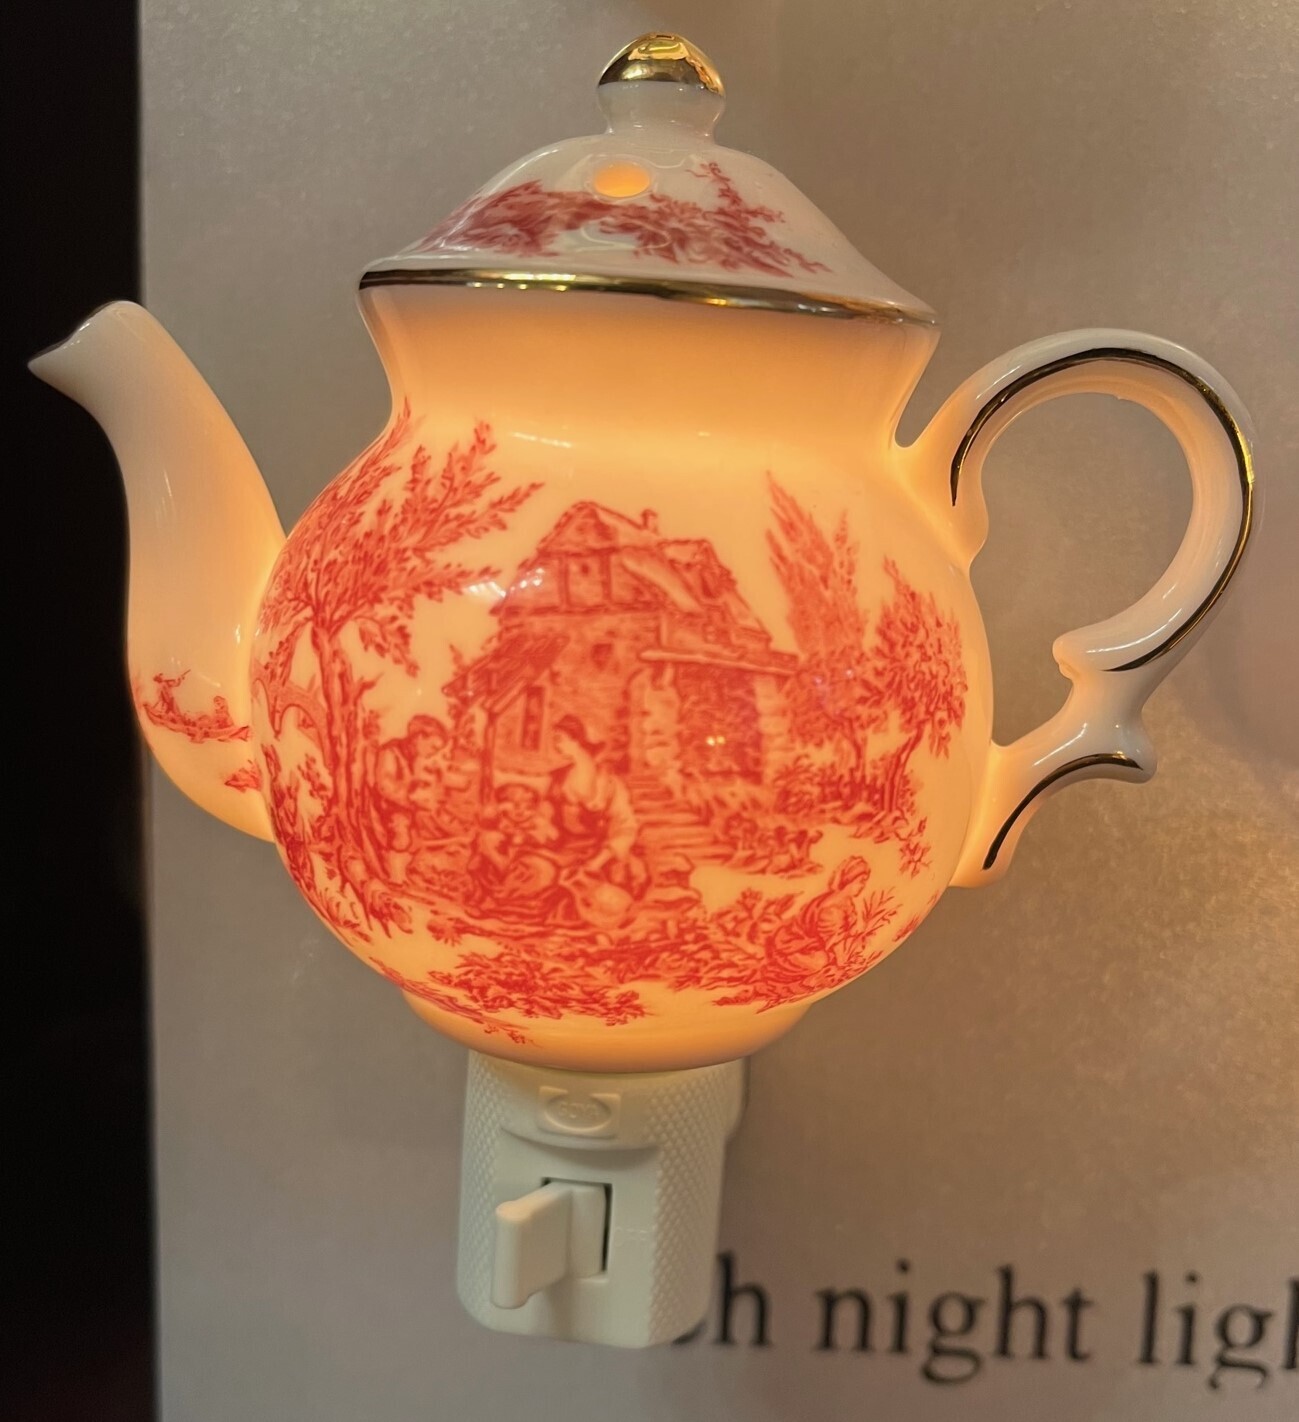 Teapot Night Light!